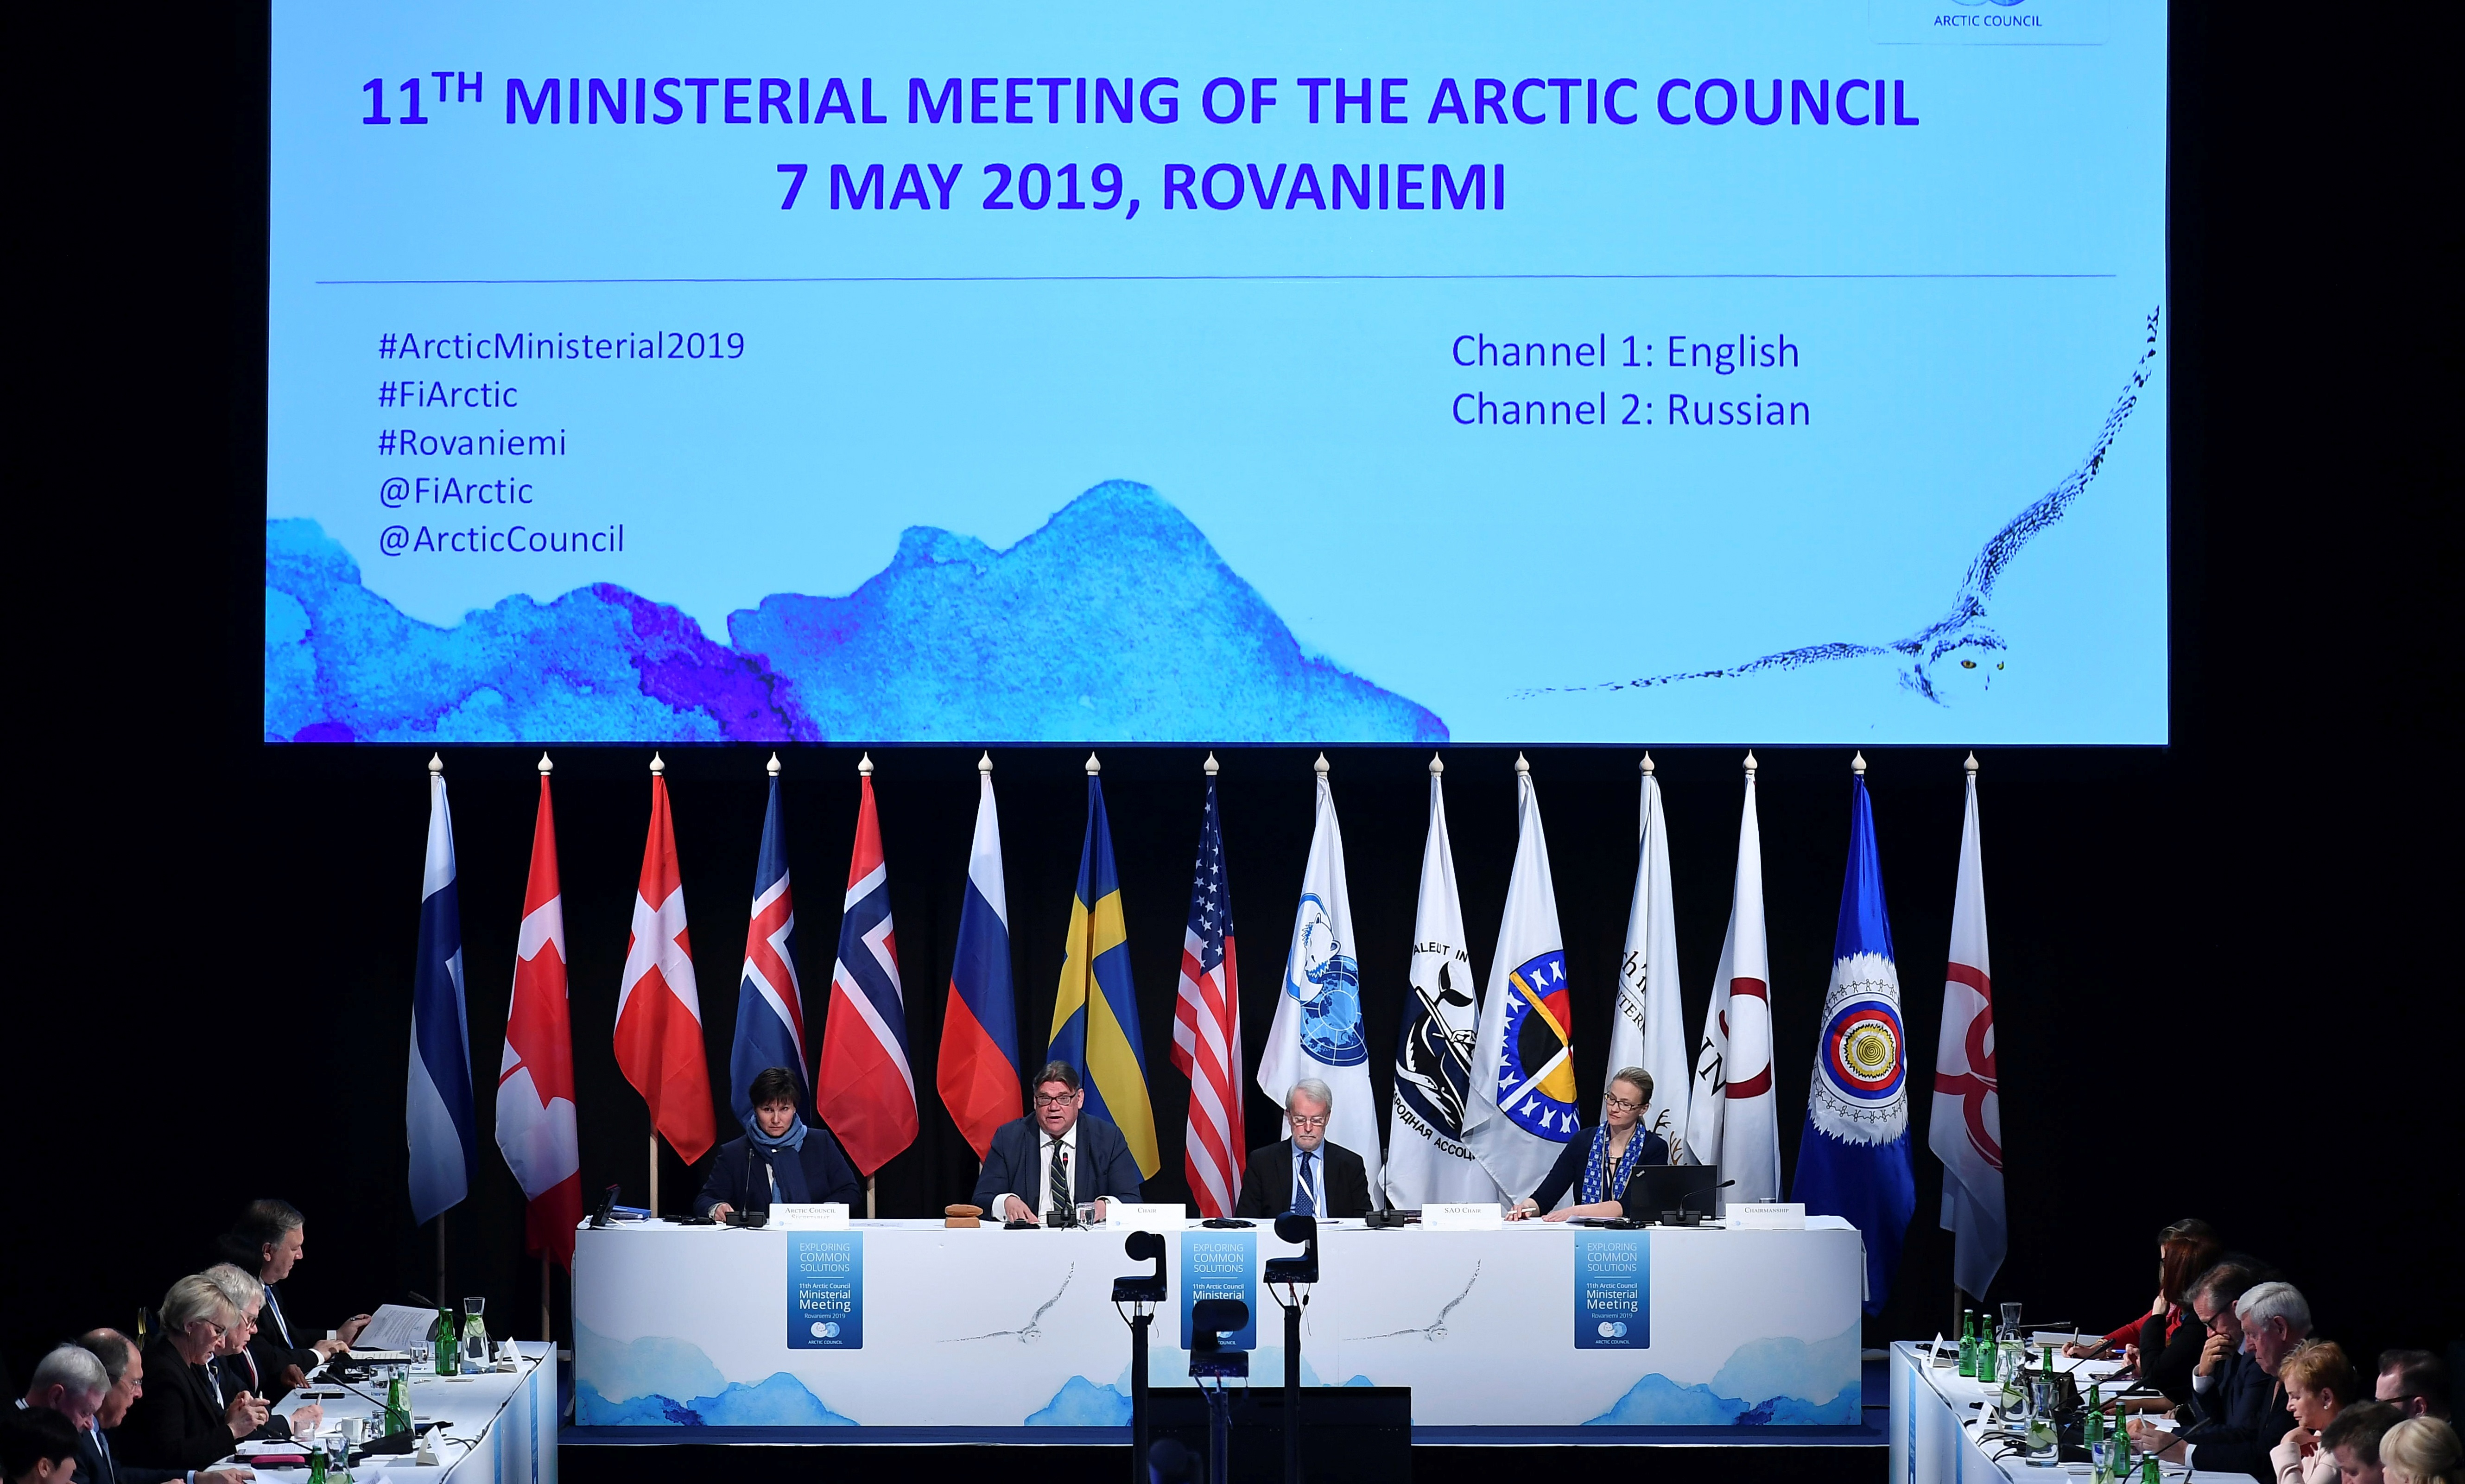  مجلس القطب الشمالي هي هيئة تنسيق دولية تضم في عضويتها الدول الثماني التي تمتلك أراضي داخل الدائرة القطبية الشمالية (رويترز)